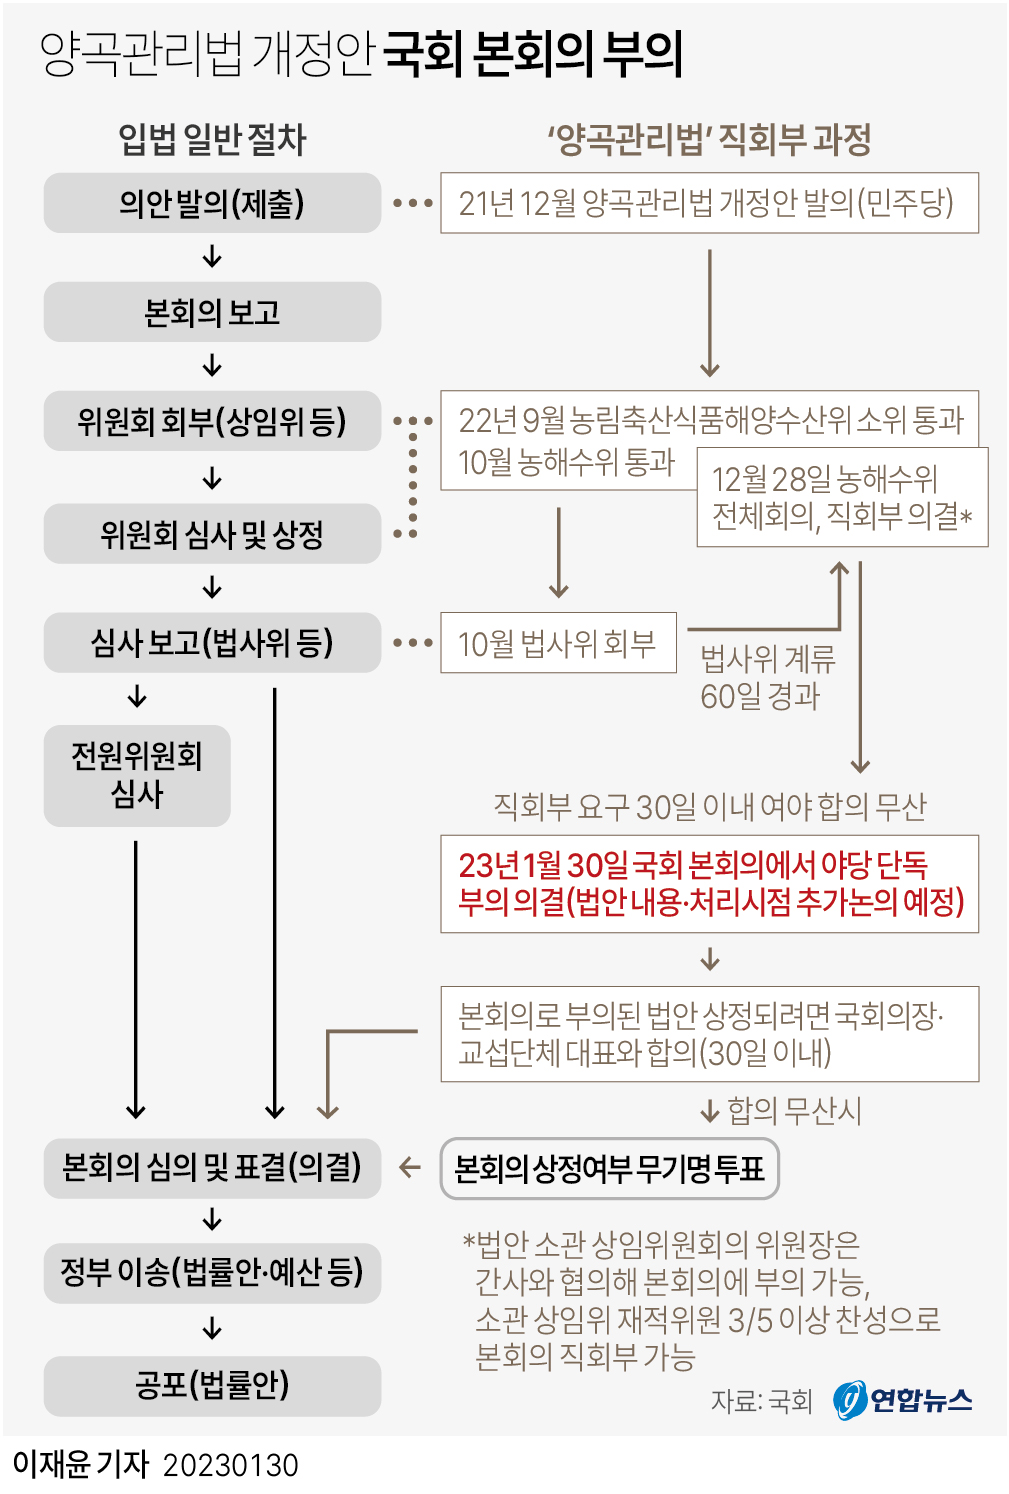 [그래픽] 양곡관리법 개정안 국회 본회의 부의